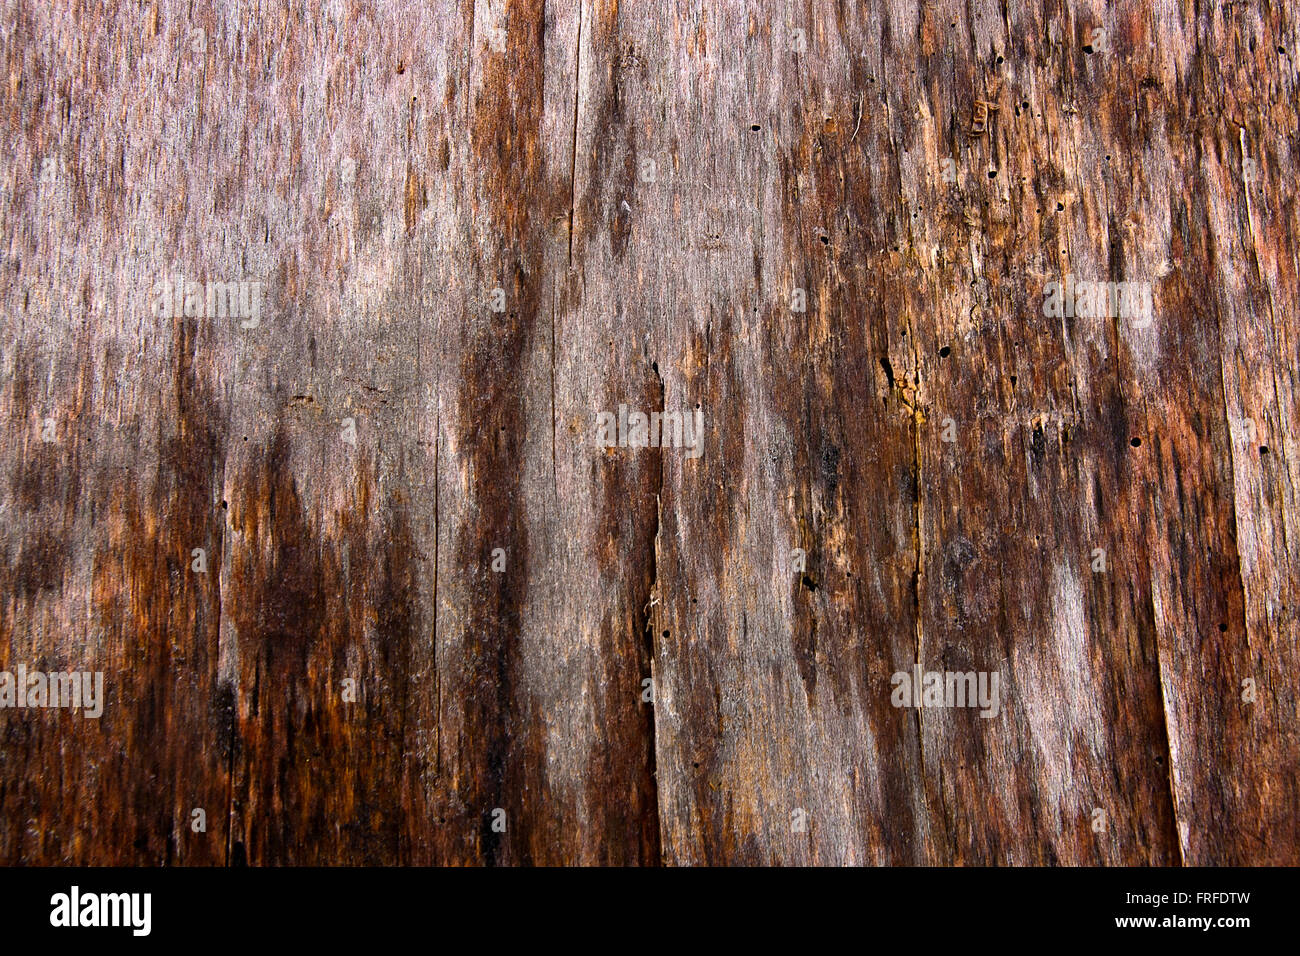 Mousse verte et la moisissure sur le vieil arbre. Fond texturé bois avec texture mousse verte Banque D'Images